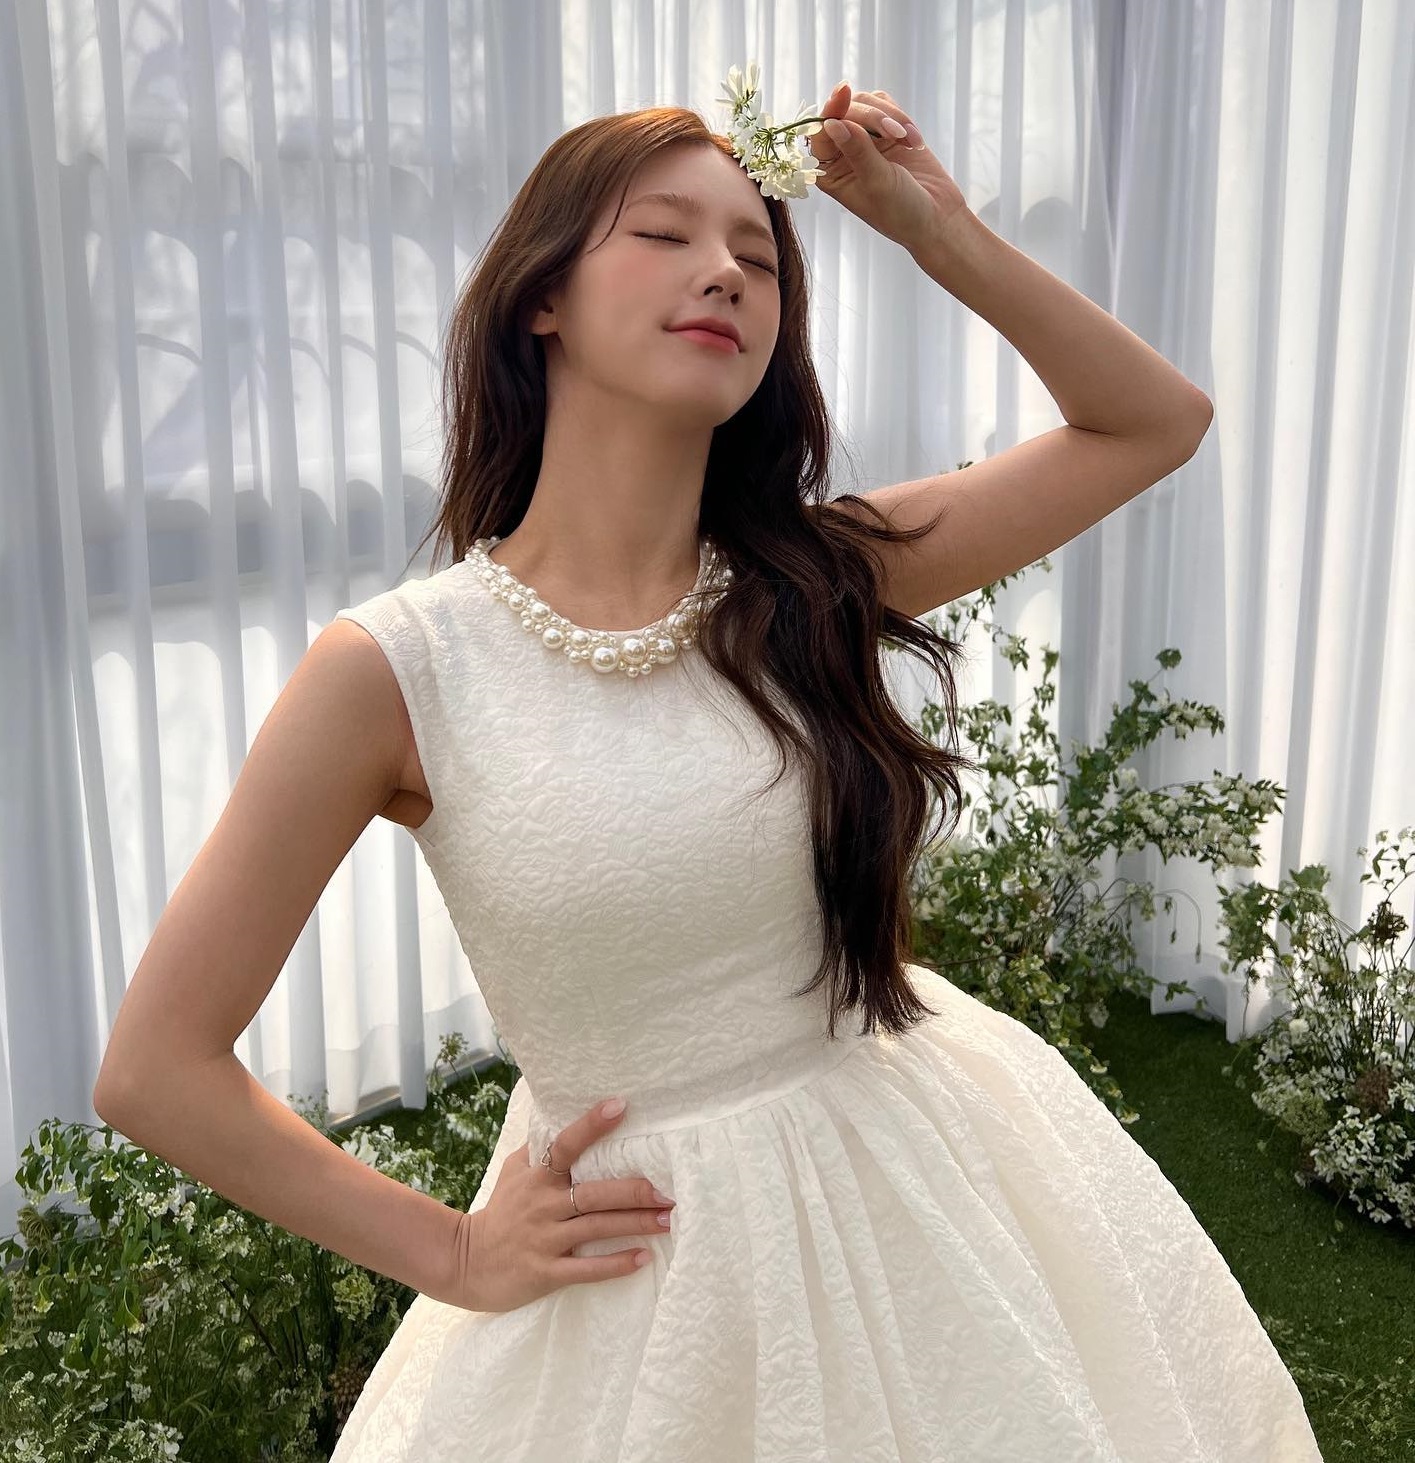 Đồ Zara, H&M sao Hàn vừa diện: Toàn váy áo xinh yêu, hợp với mùa Hè - Ảnh 11.